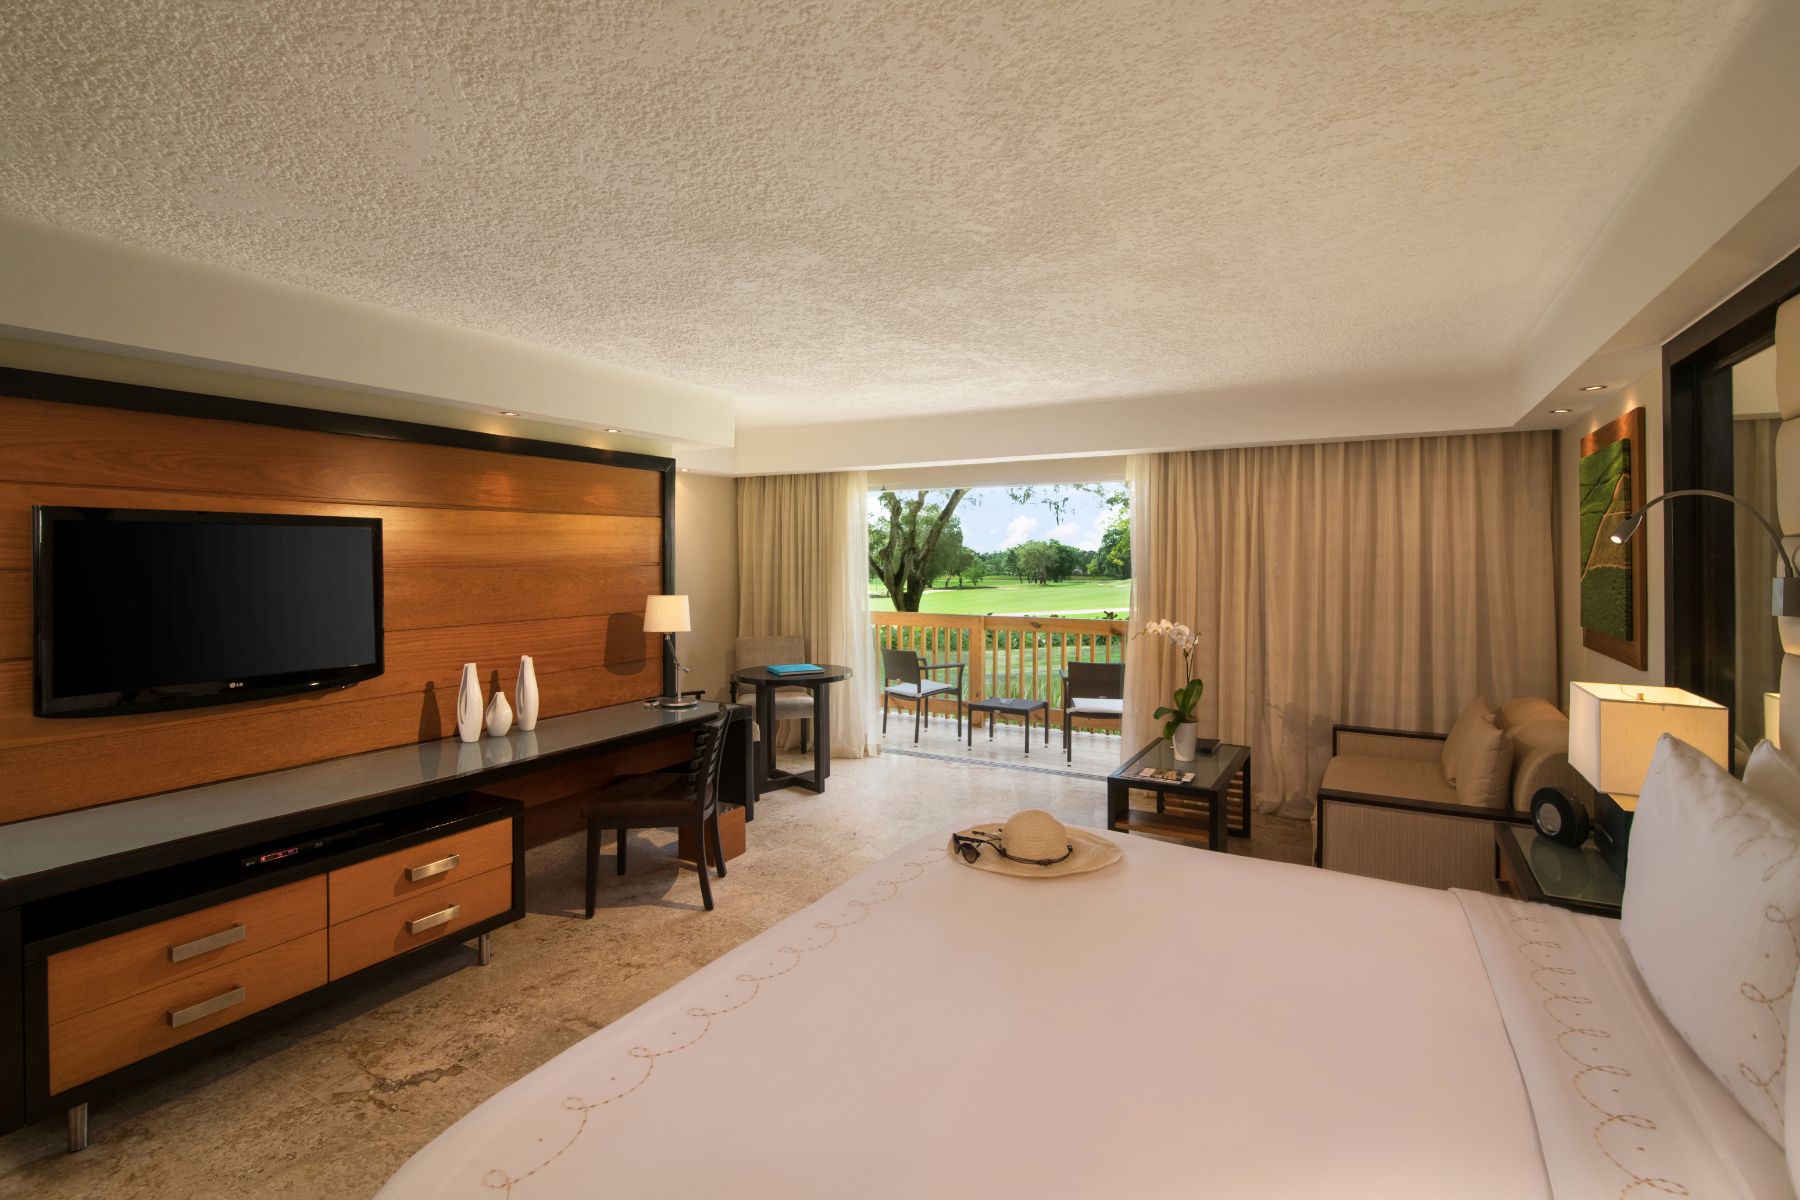 Elite Hotel Suites in the Dominican Republic